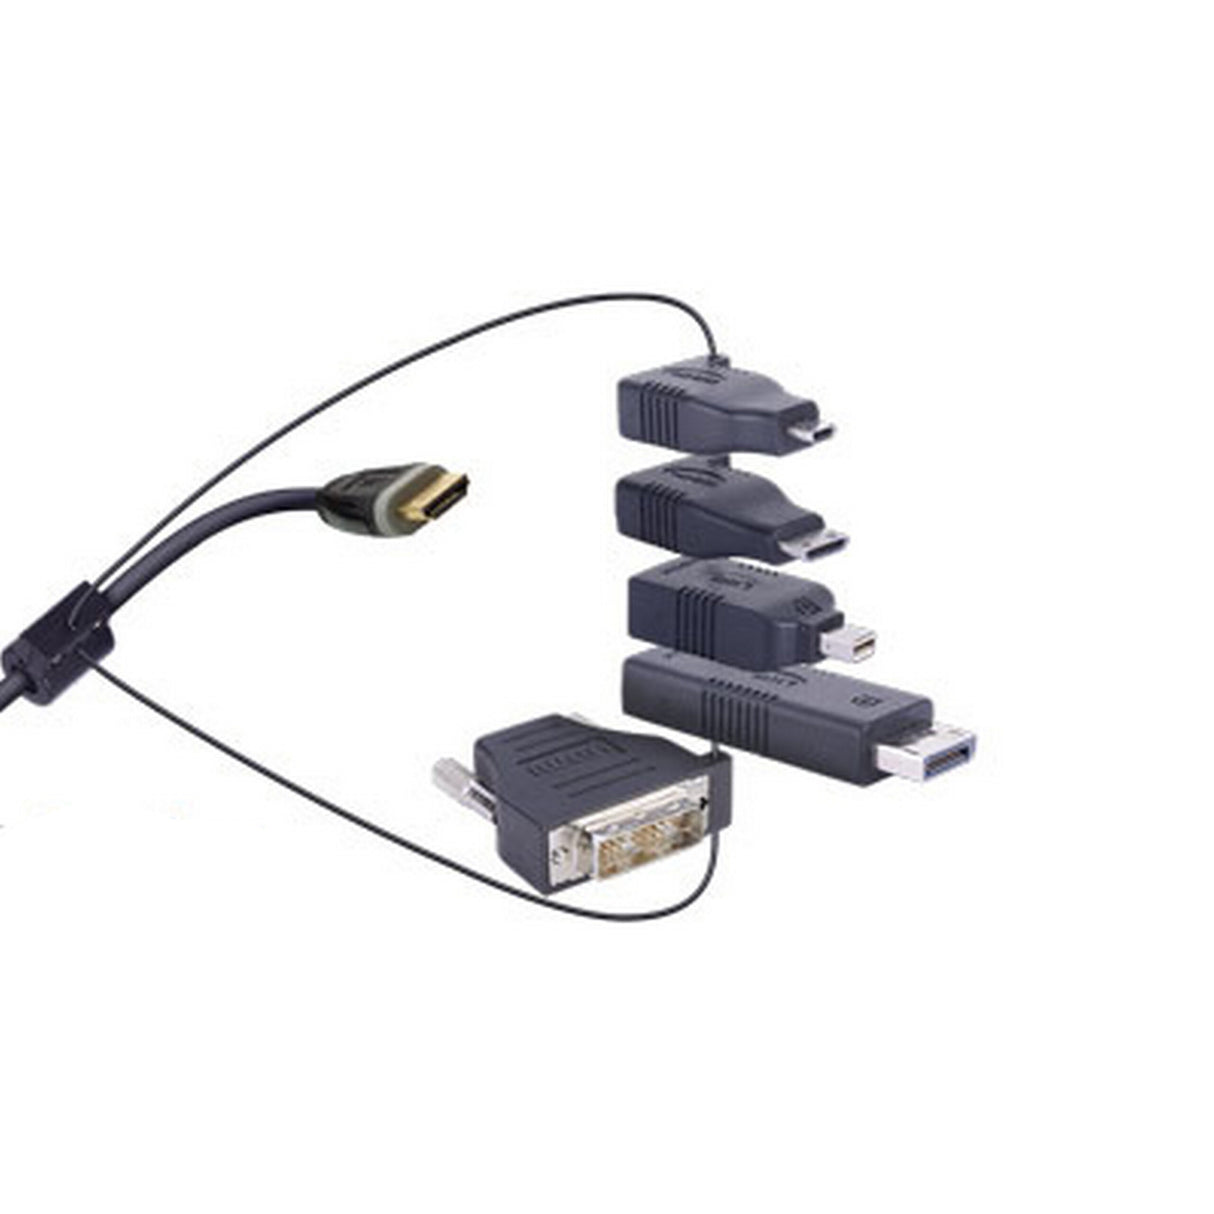 DigitaLinx DL-AR-P03 HDMI Adapter Ring